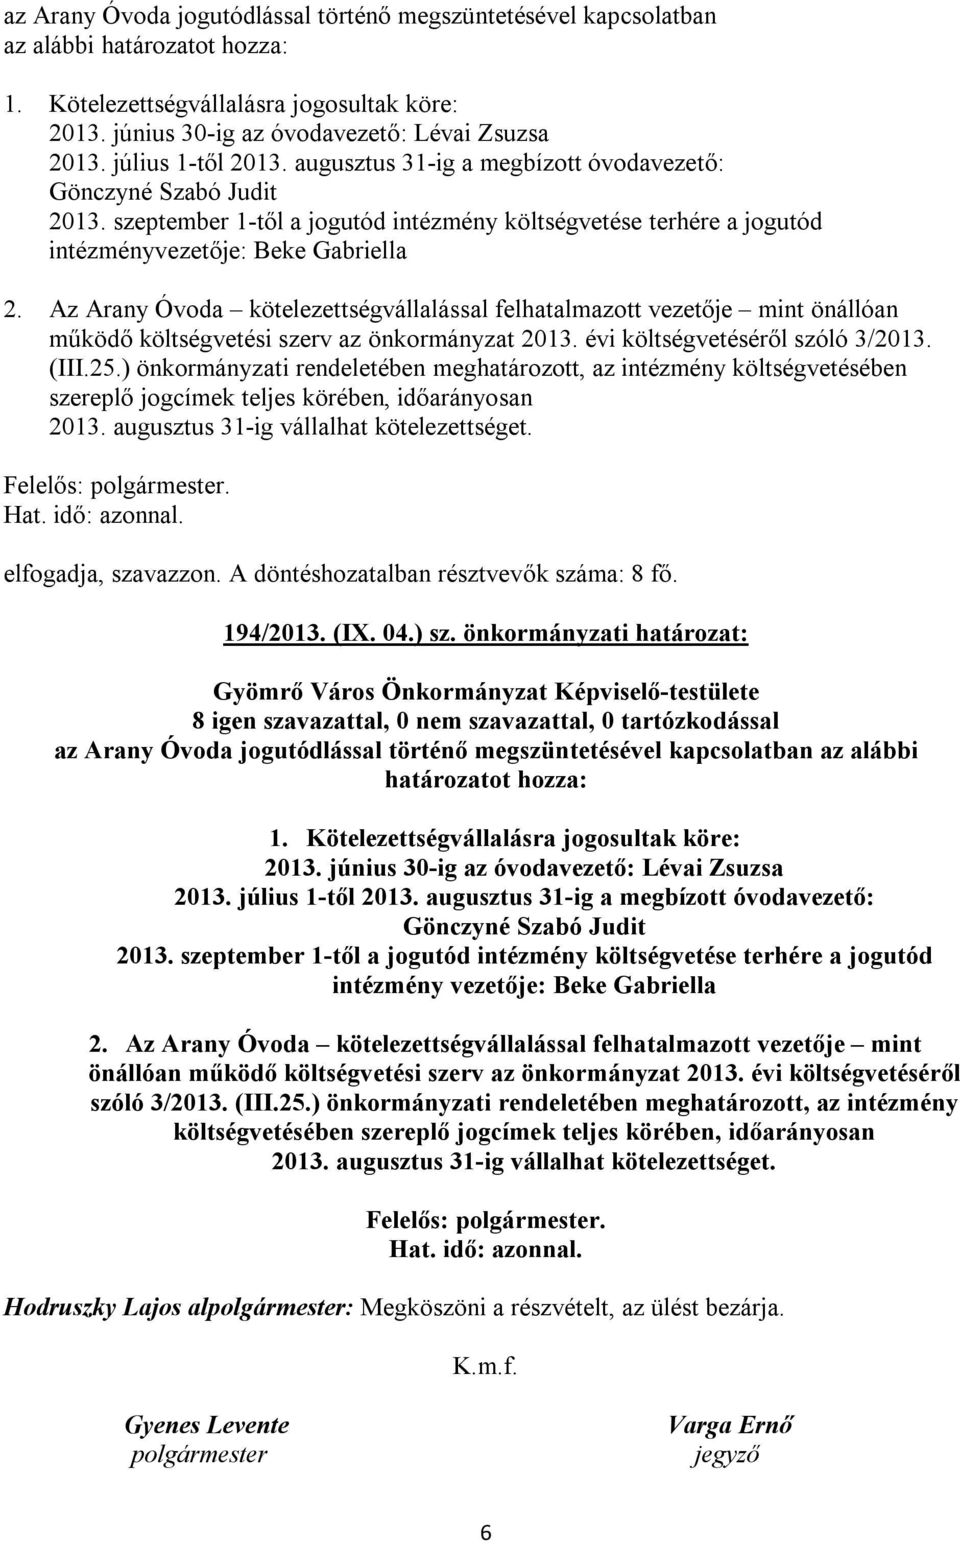 Az Arany Óvoda kötelezettségvállalással felhatalmazott vezetője mint önállóan működő költségvetési szerv az önkormányzat 2013. évi költségvetéséről szóló 3/2013. (III.25.